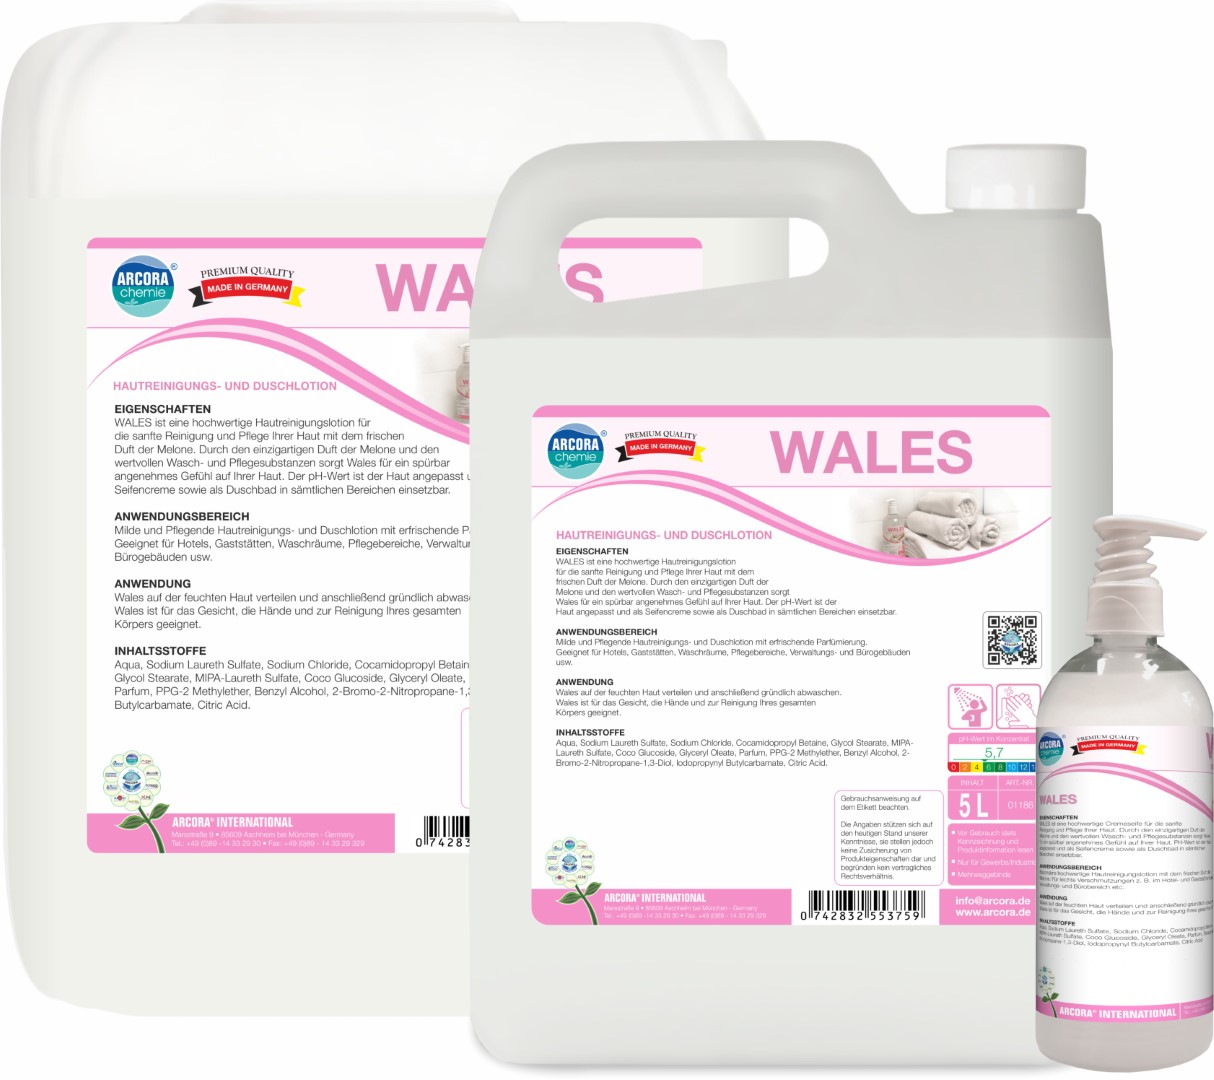 Wales | Hautreinigungs- & Duschlotion | 500ml Flasche